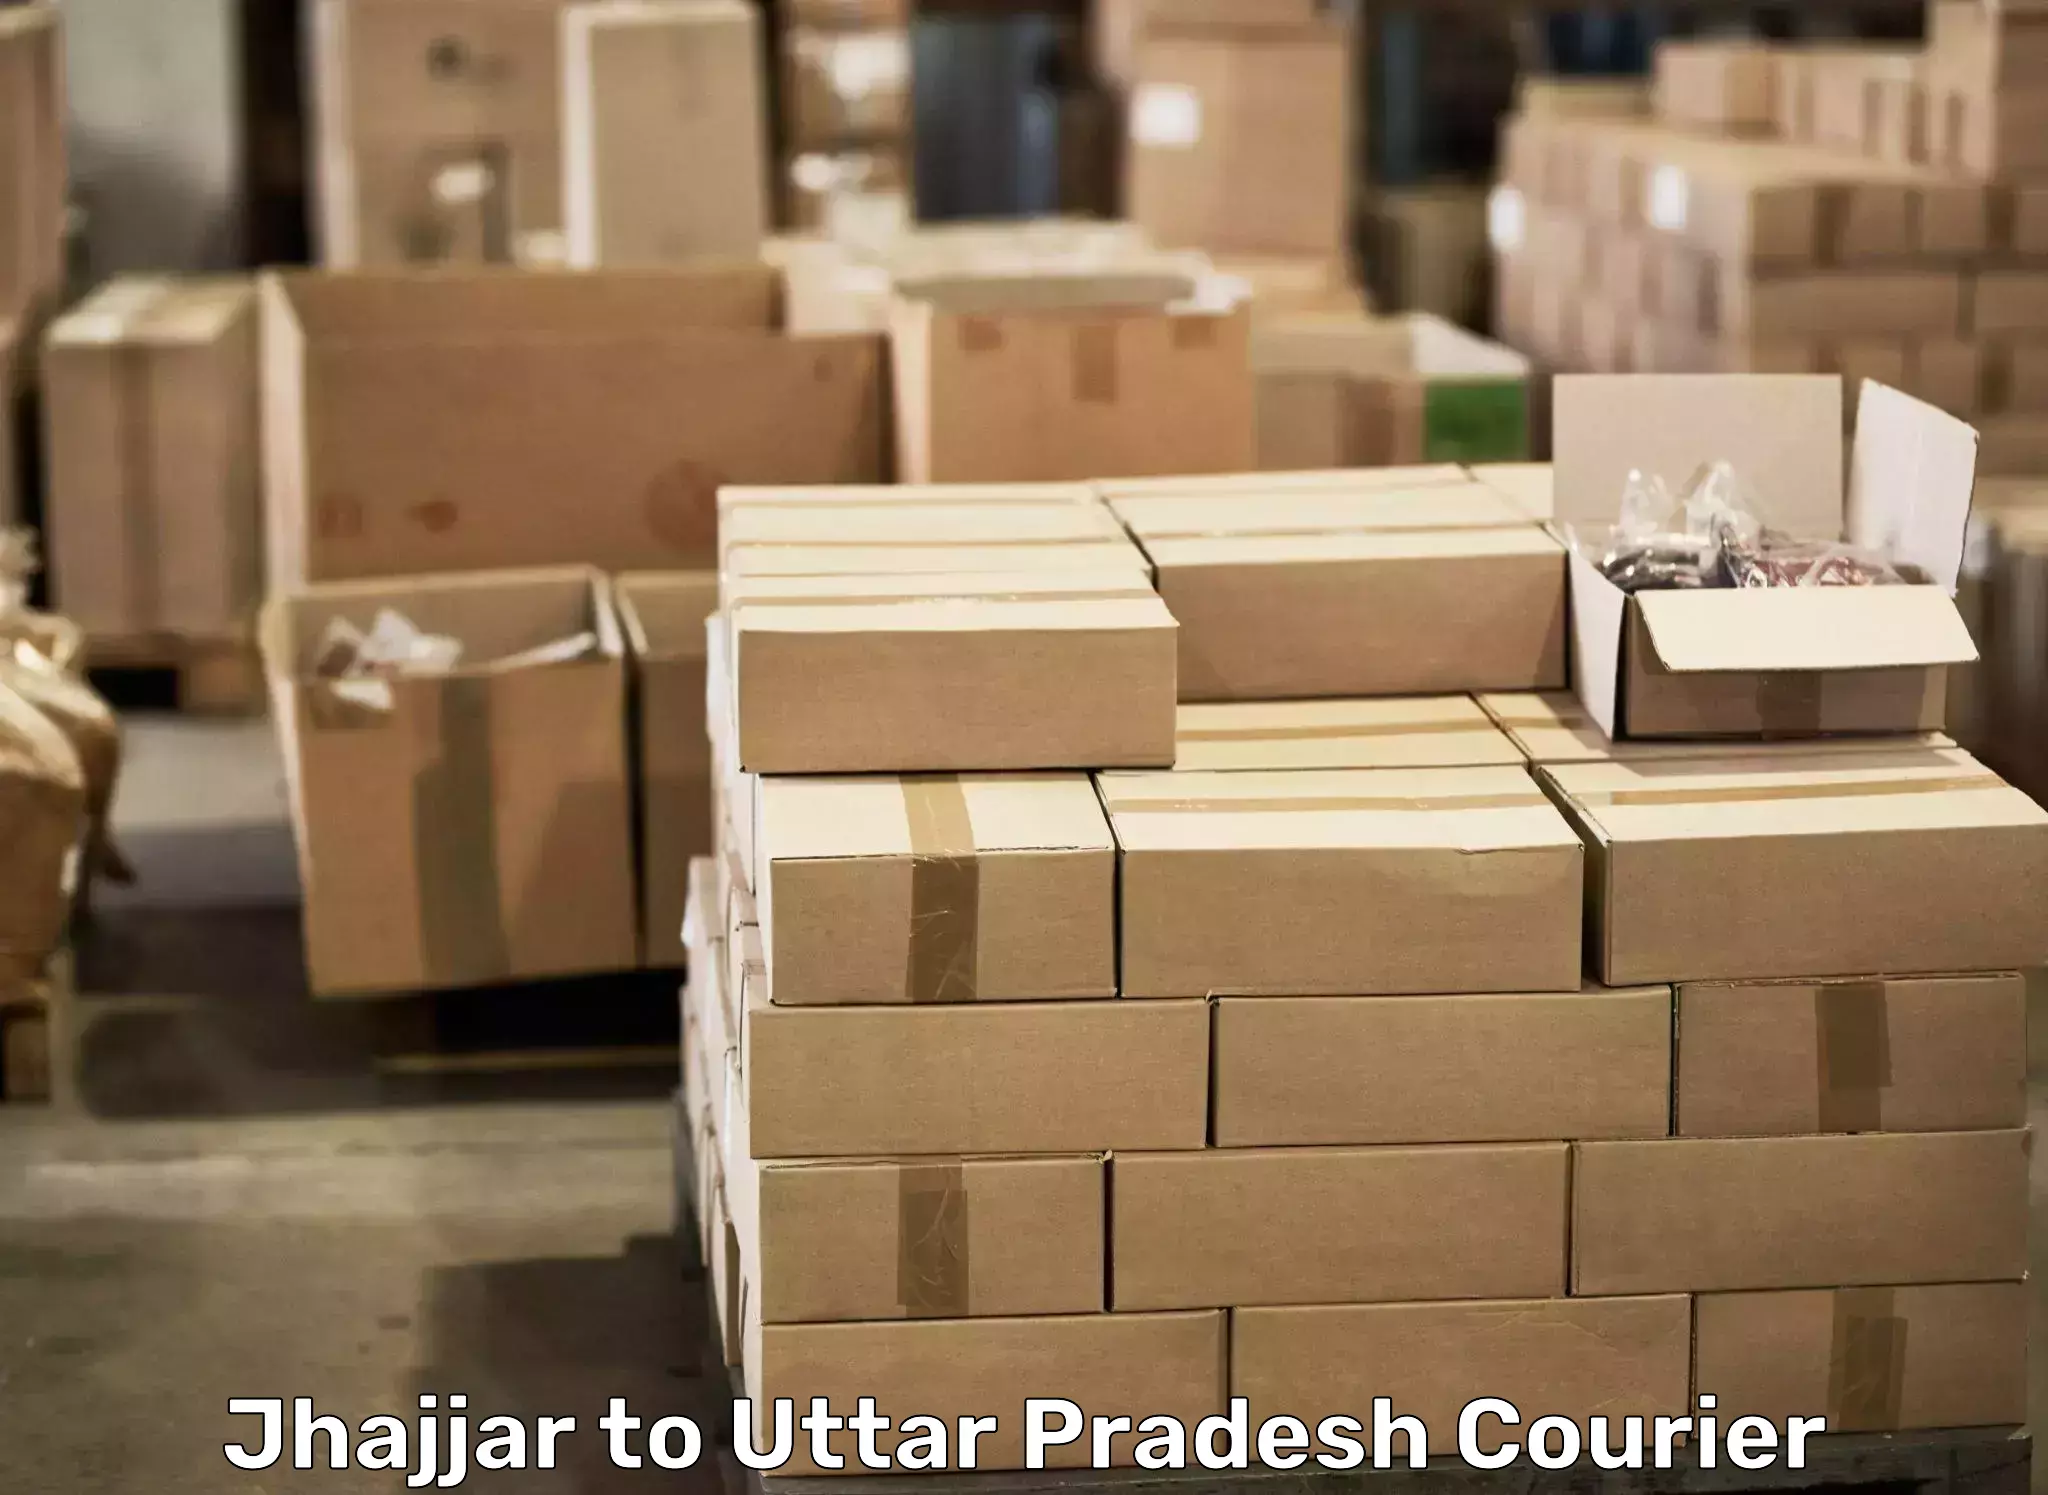 Efficient packing and moving Jhajjar to IIT Varanasi